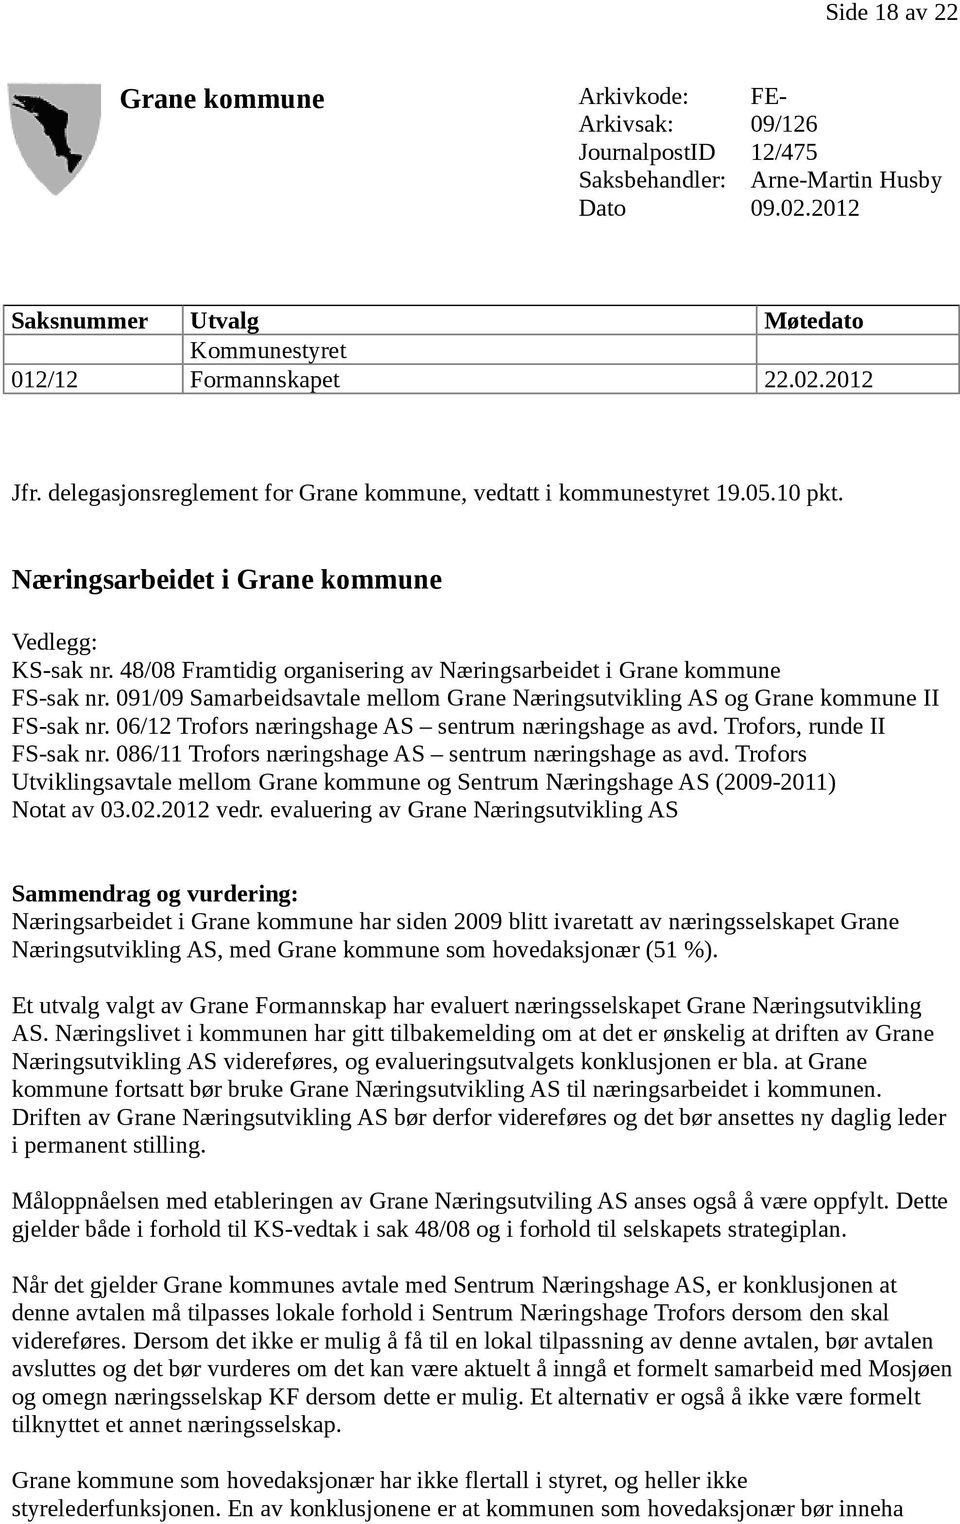 48/08 Framtidig organisering av Næringsarbeidet i Grane kommune FS-sak nr. 091/09 Samarbeidsavtale mellom Grane Næringsutvikling AS og Grane kommune II FS-sak nr.